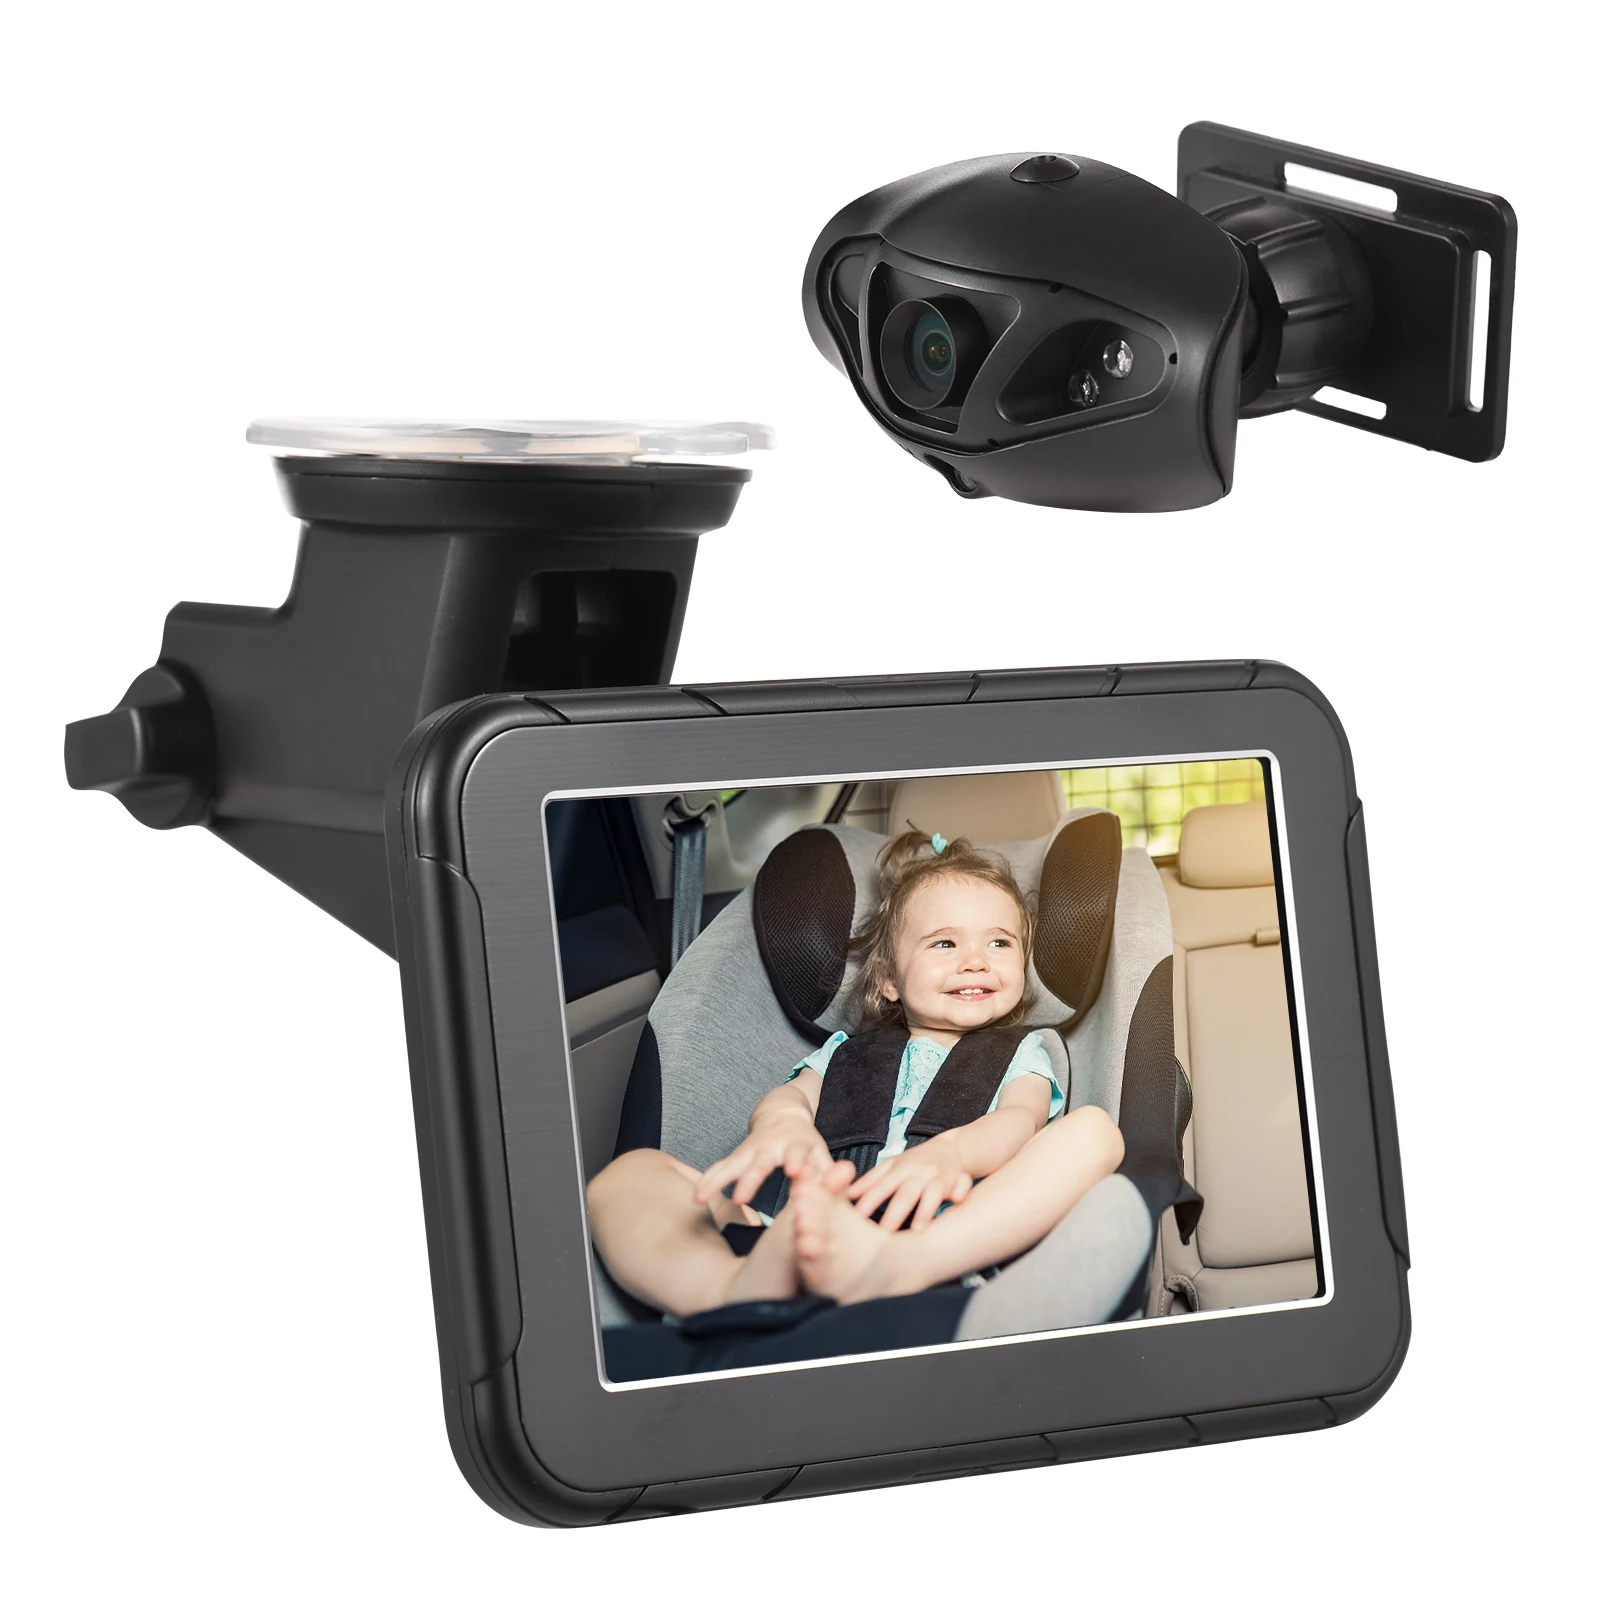 Tanio 1080P Monitor HD aparat dziecko Monitor samochodowy do tyłu